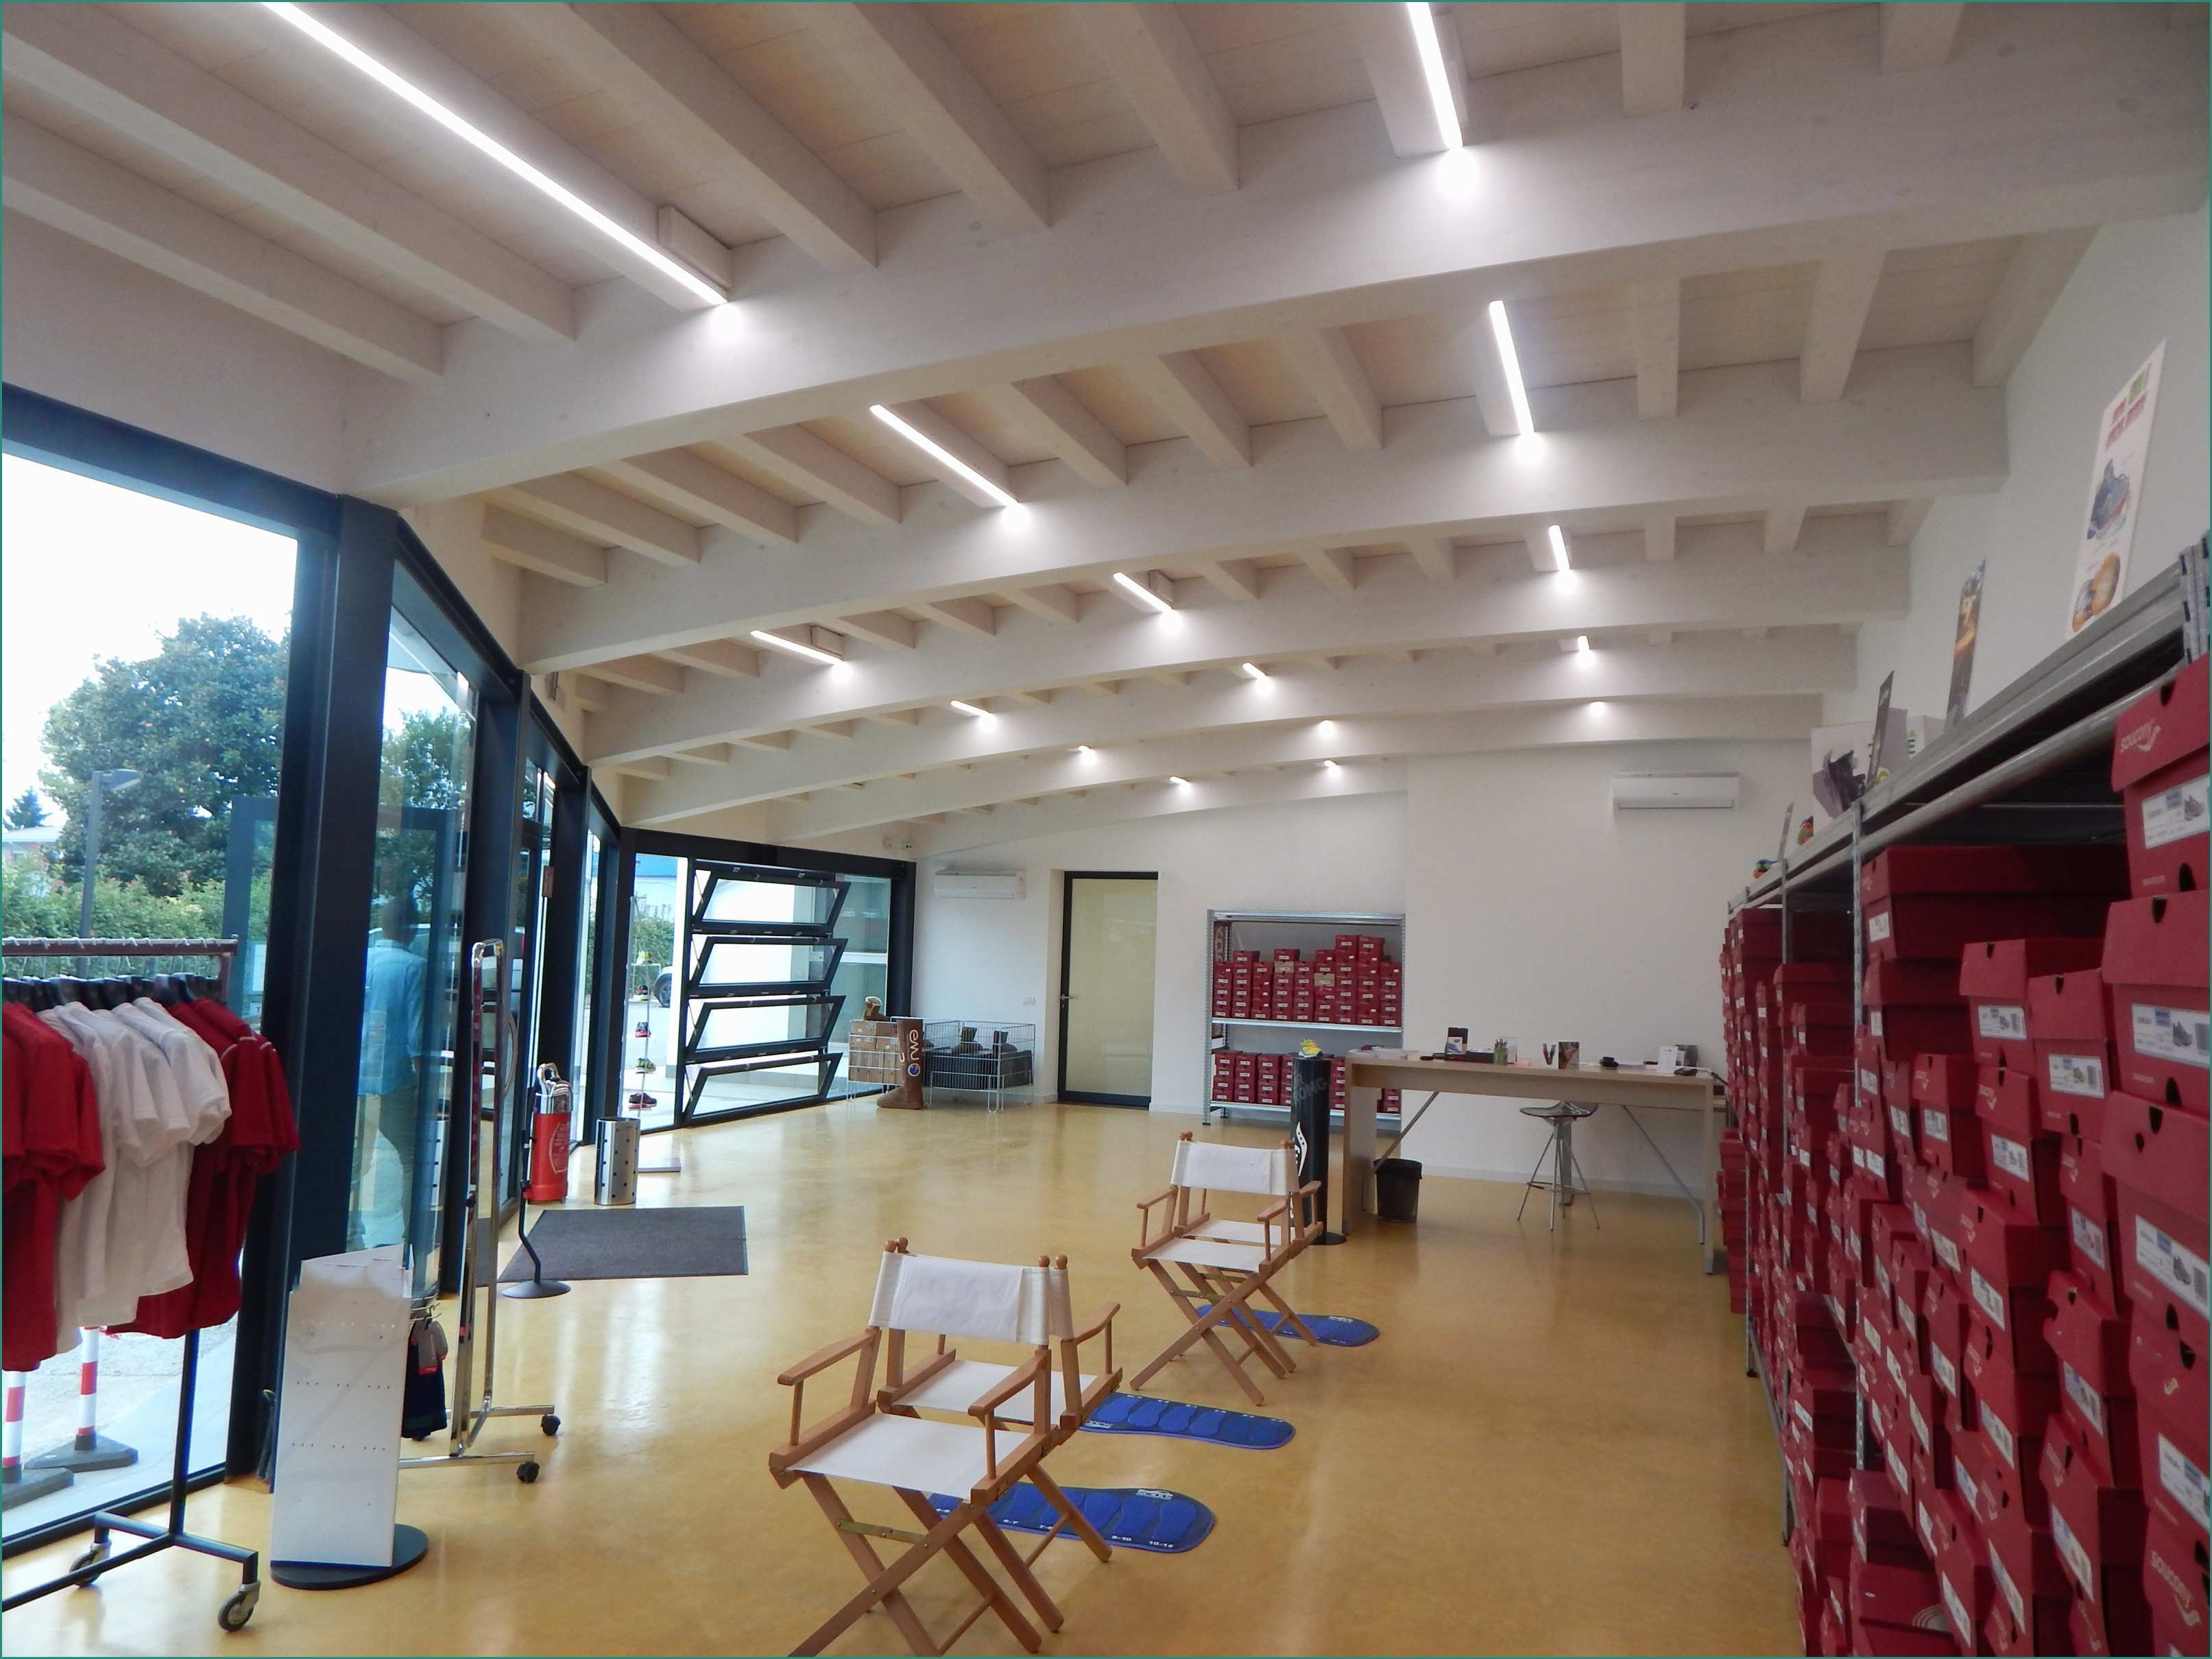 Lampadari A soffitto Moderni E Lampadari Tetto In Legno – Idea Immagine Home